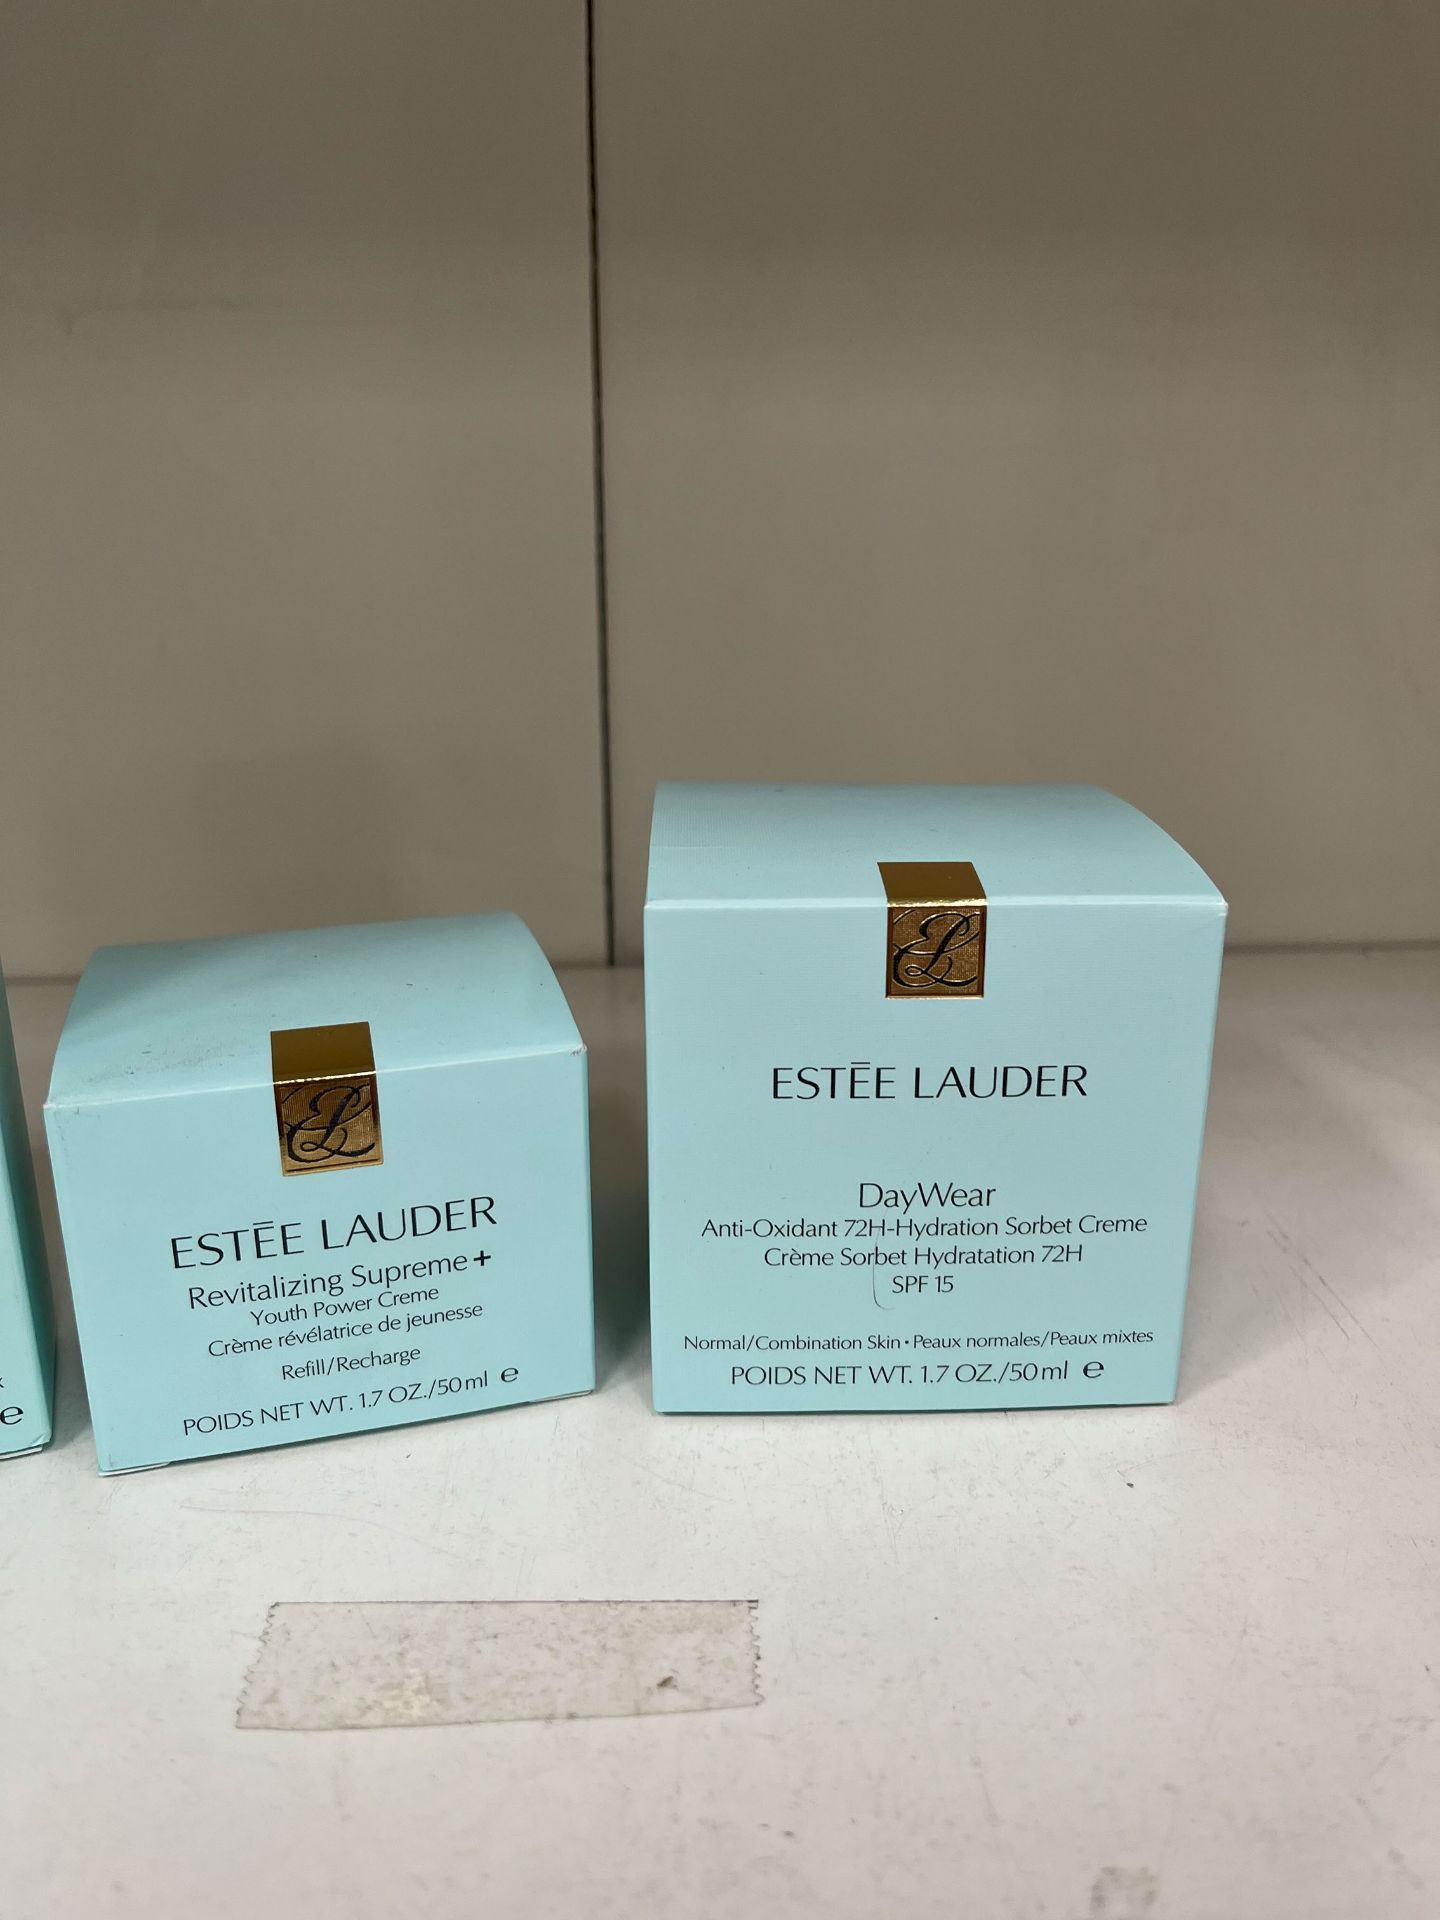 A Selection of Estée Lauder Skin Products